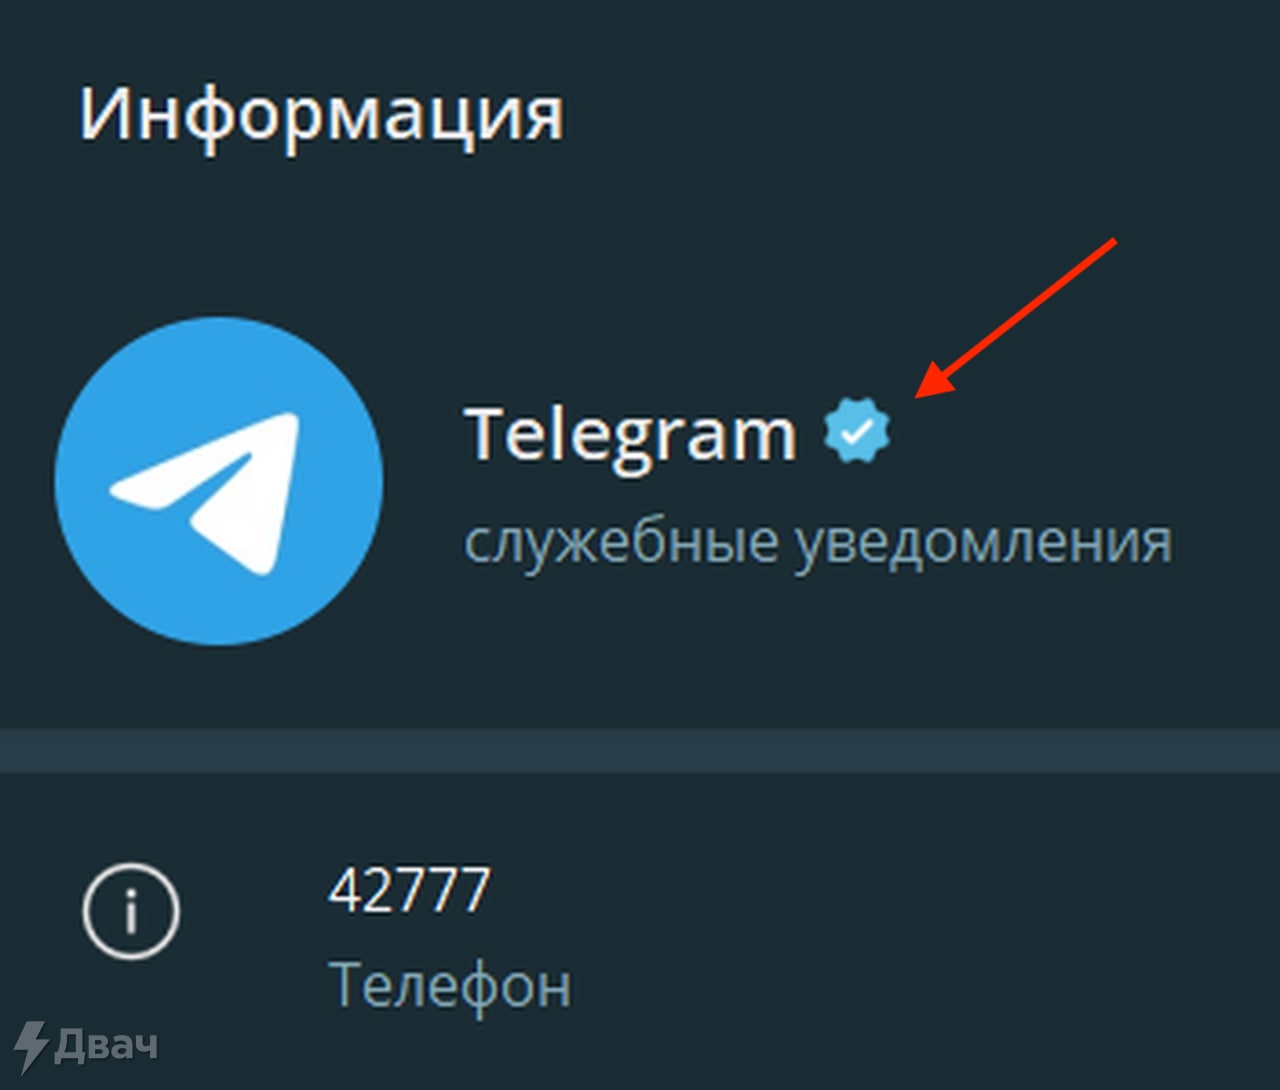 Продажа телеграмм аккаунта фото 77